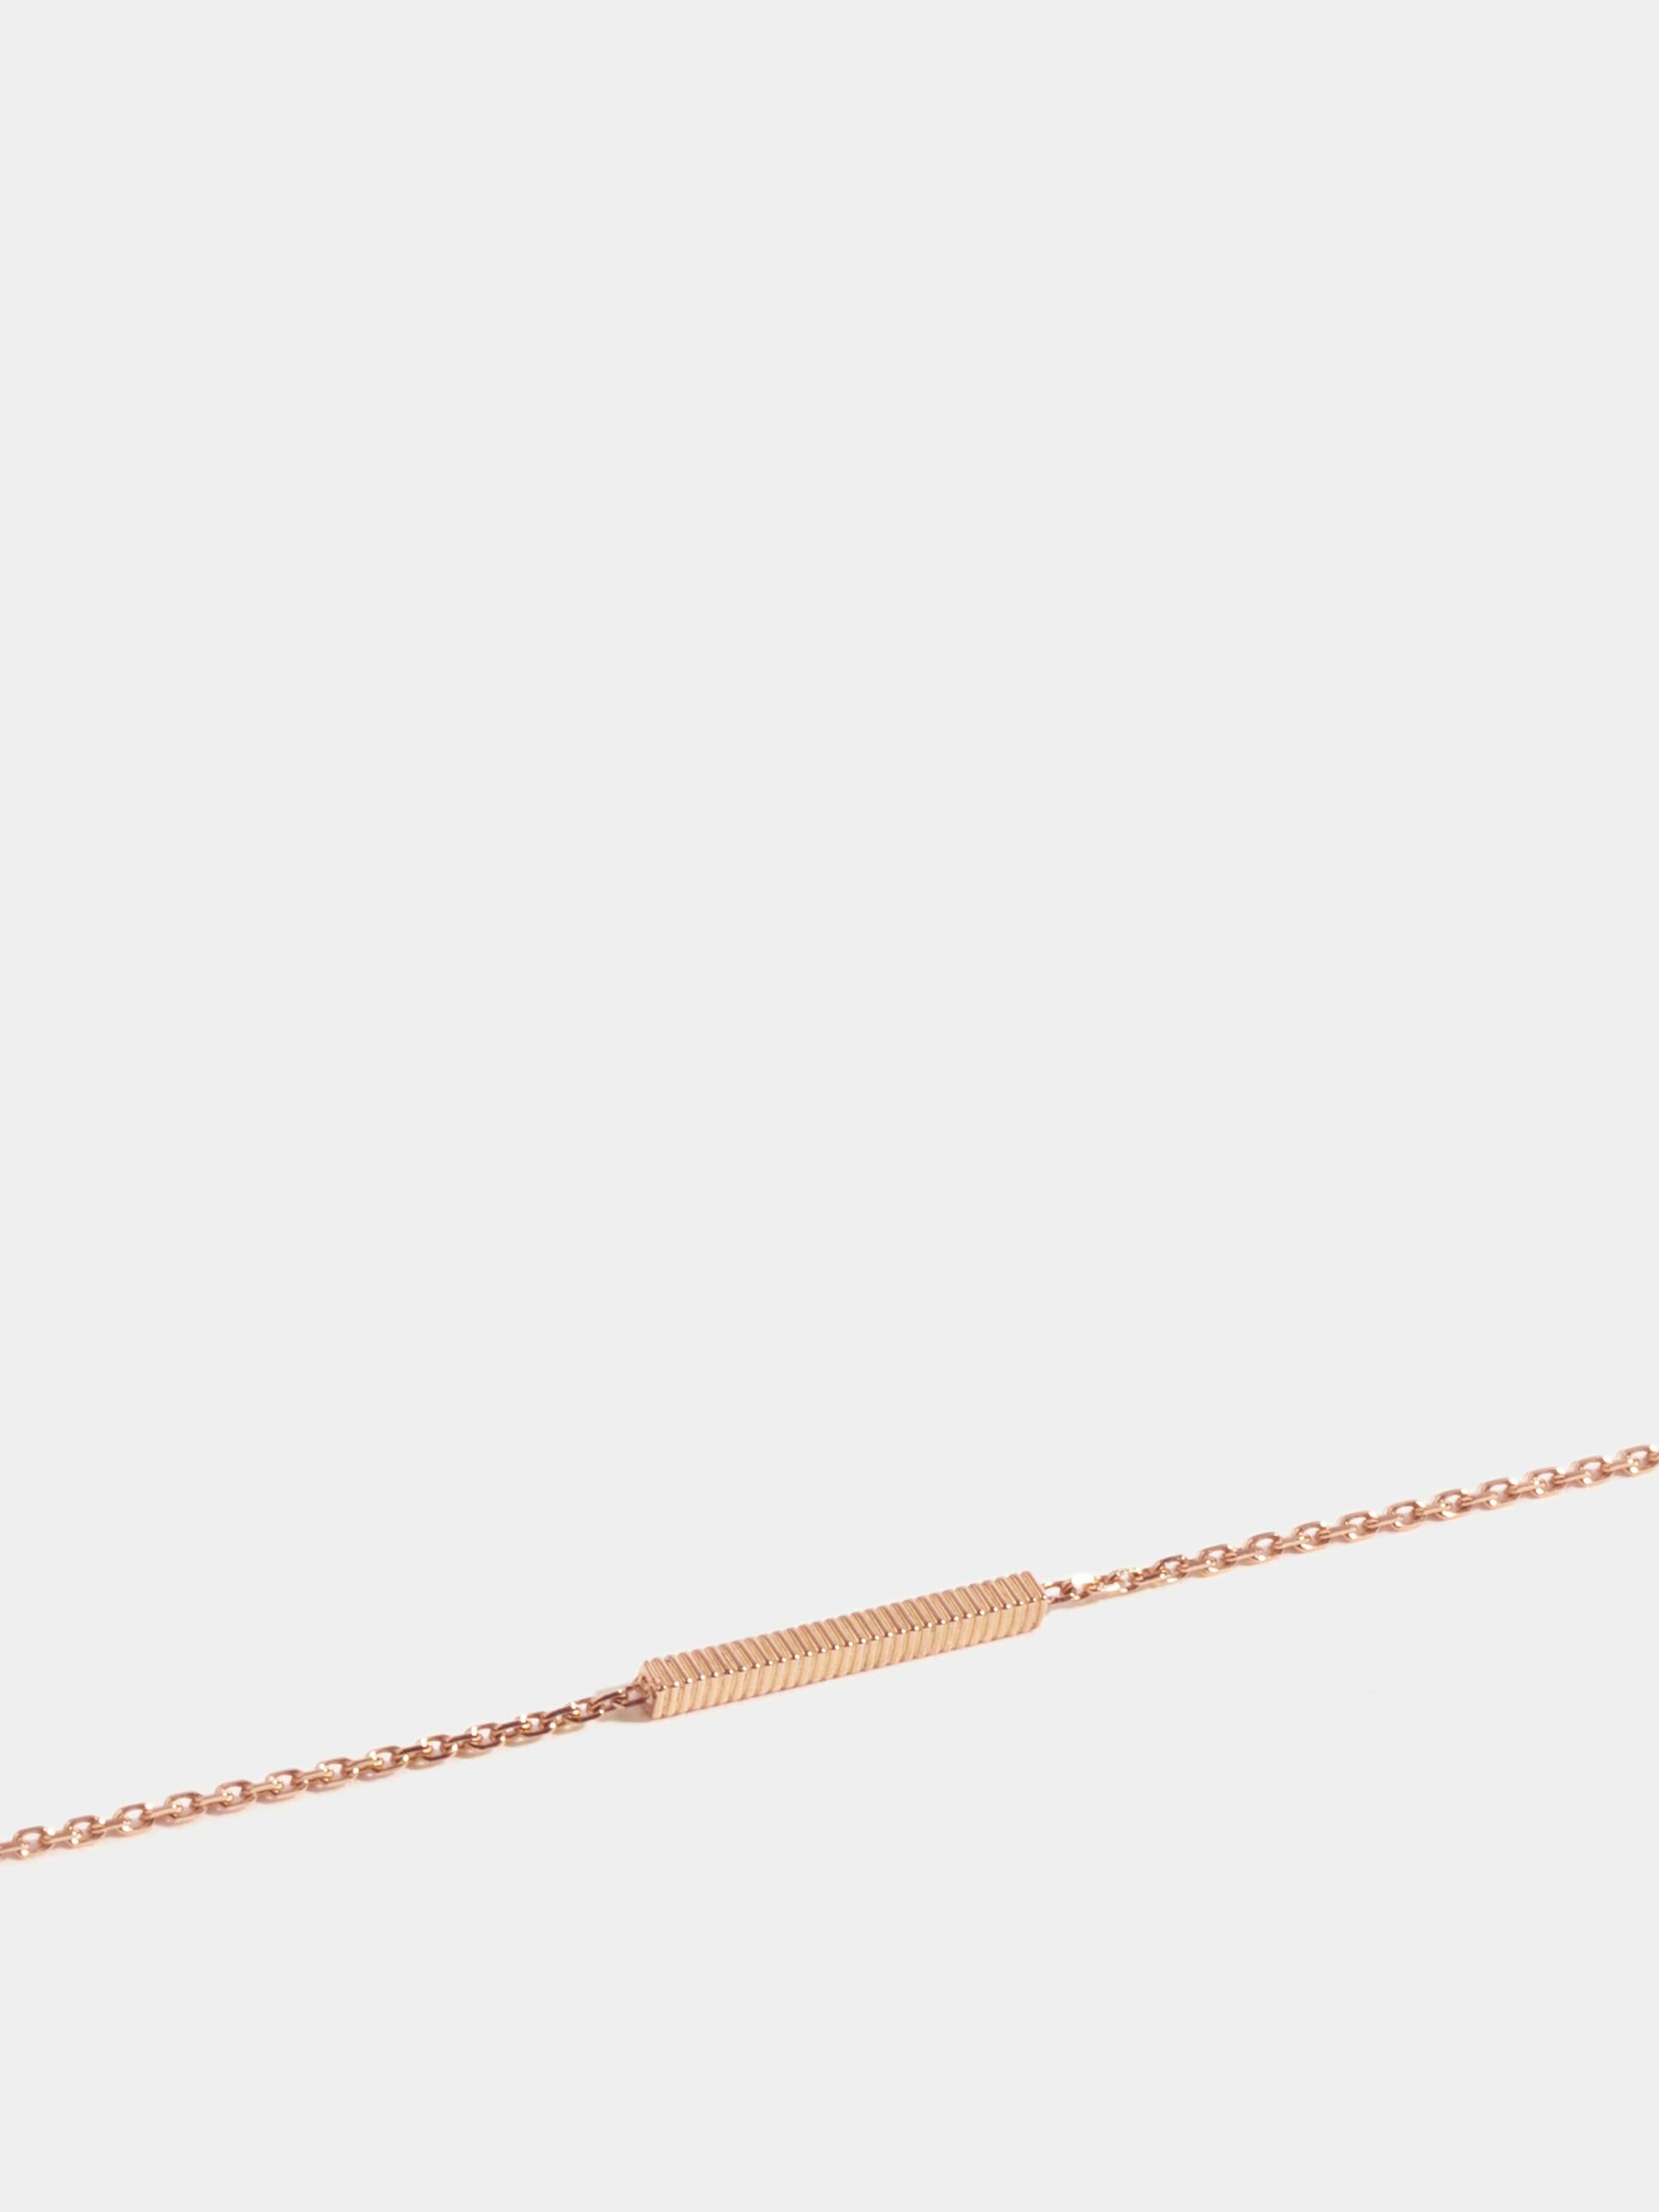 Motif Anagramme godronné en Or rose éthique 18 carats certifié Fairmined, sur chaîne de 18 cm